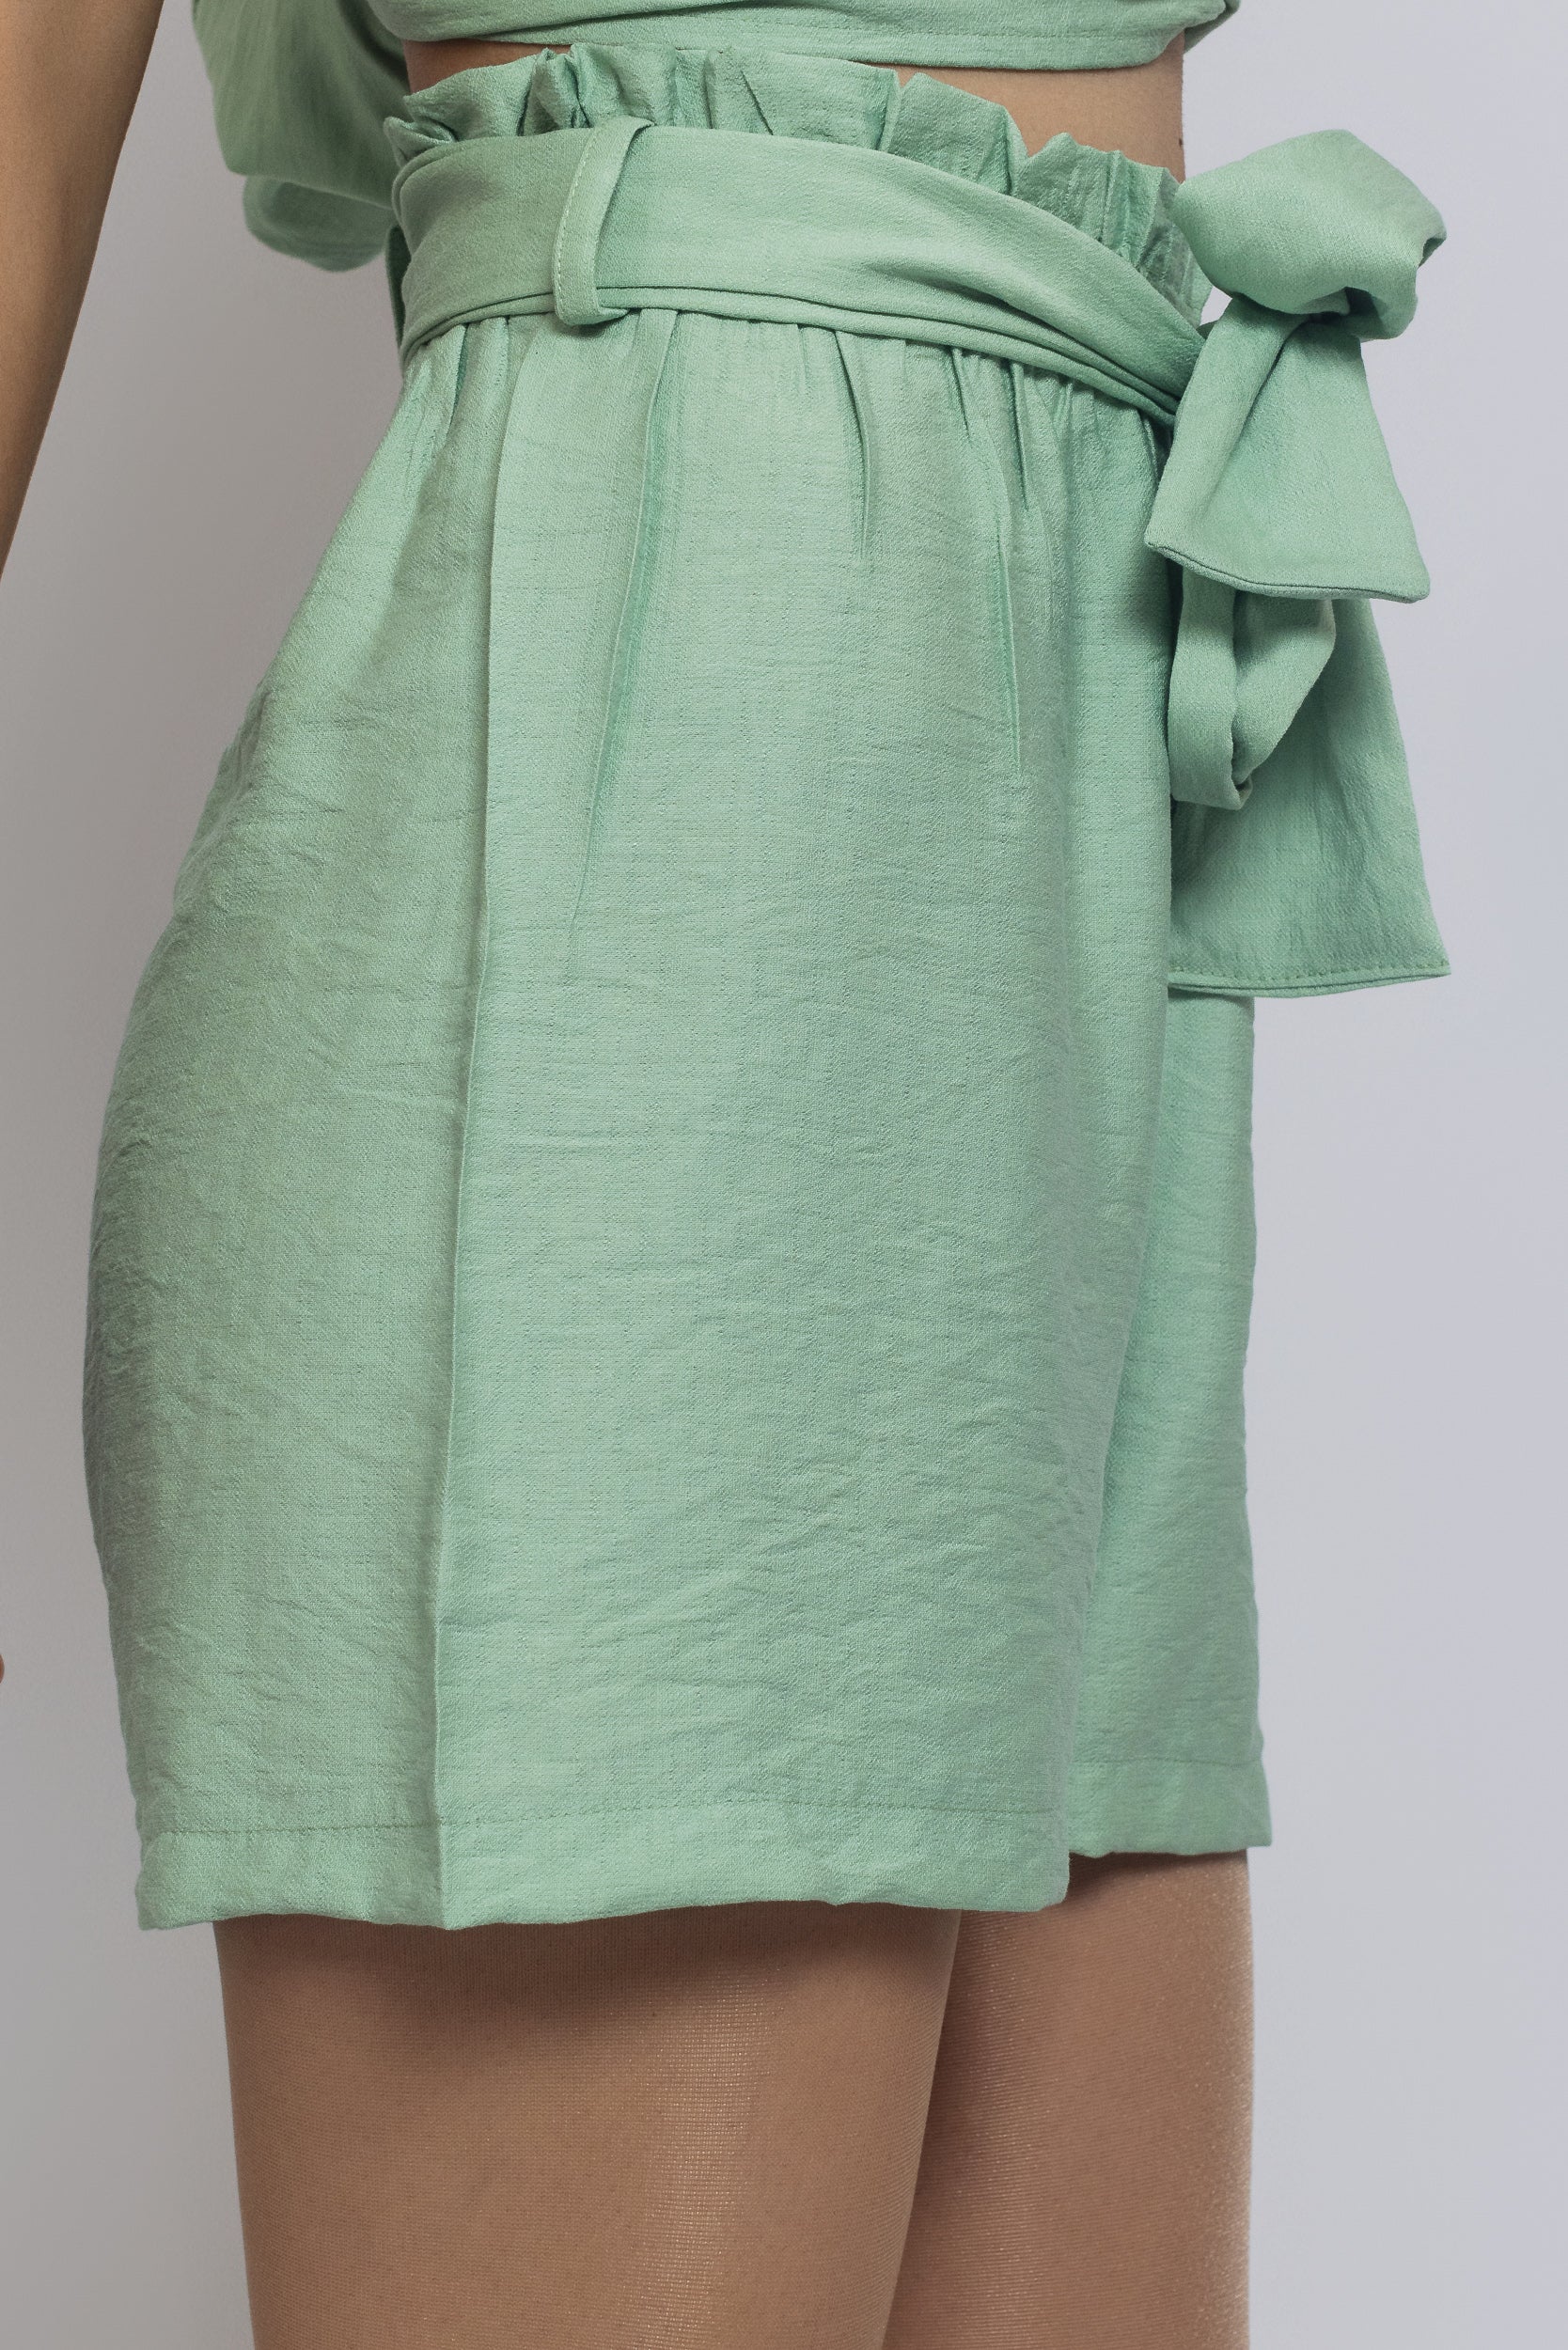 Ruffled Top + Short Set For Women - Mint Green